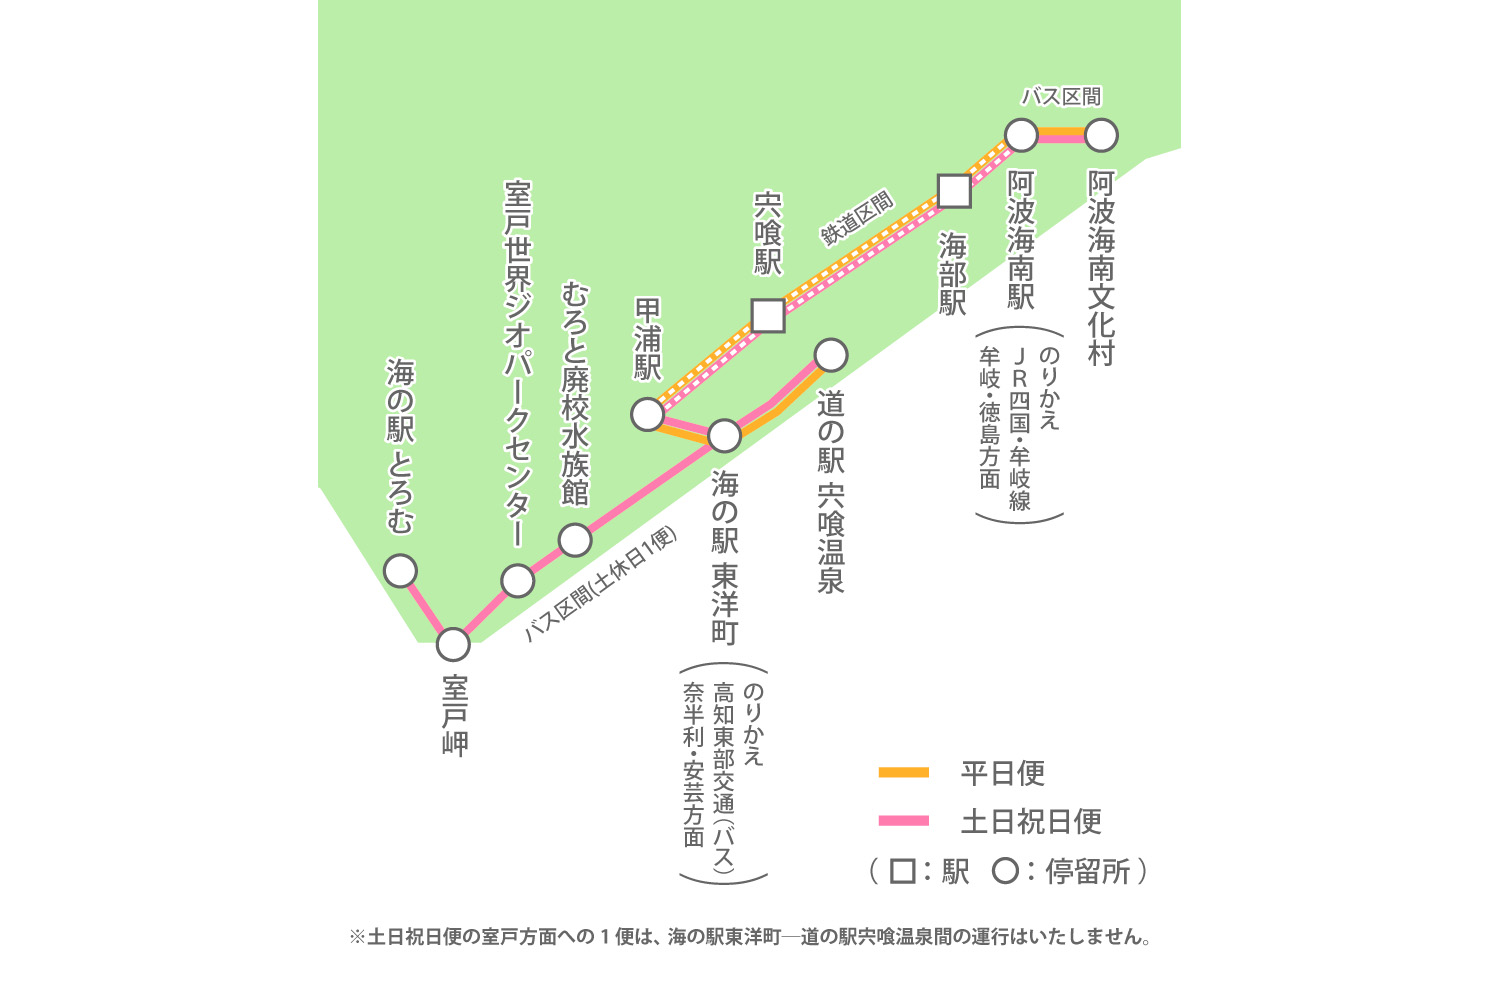 阿佐海岸鉄道のDMV運行ルート 〜 画像2